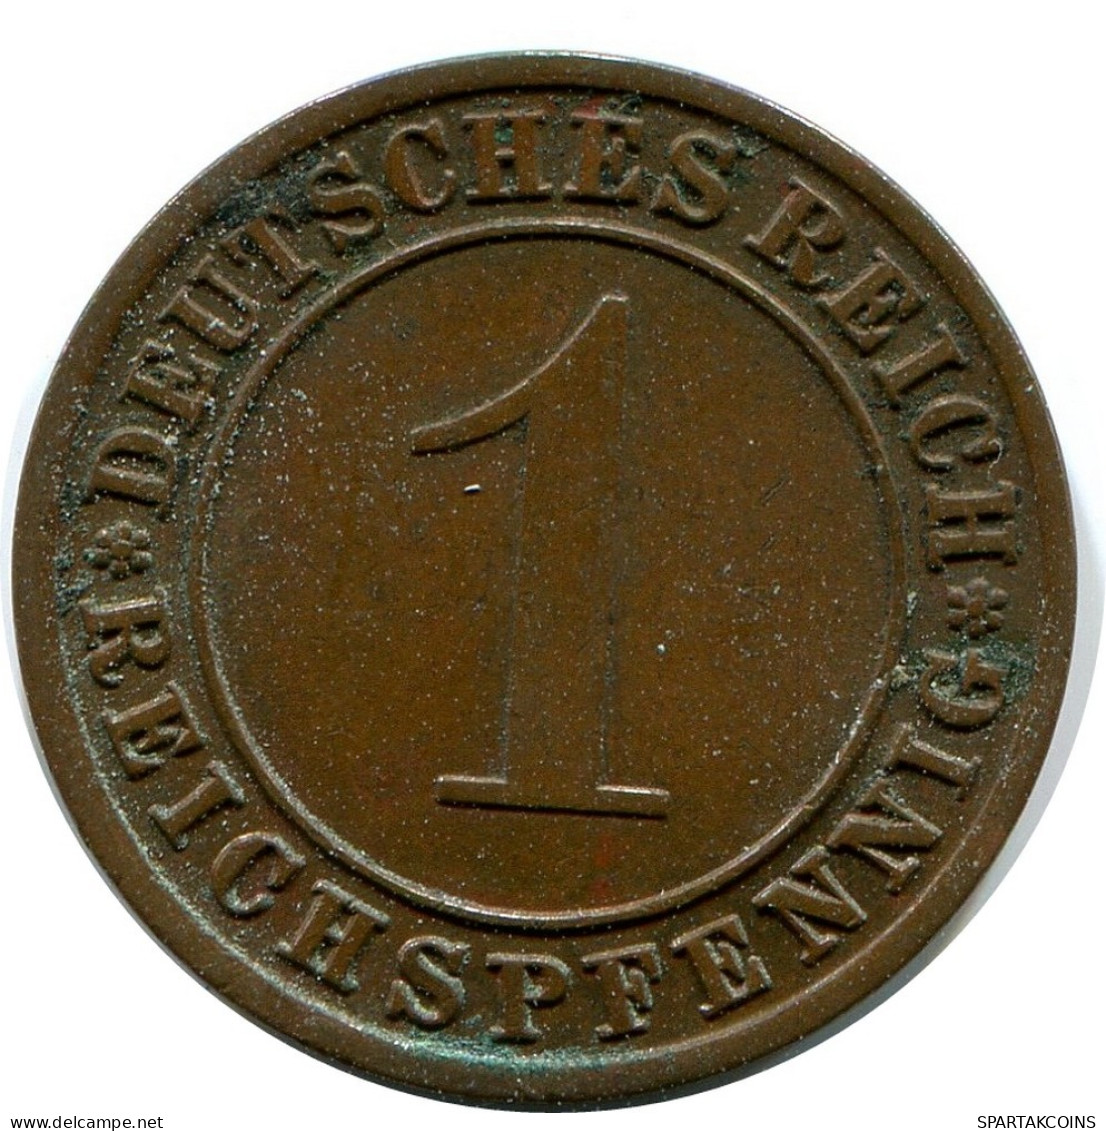 1 REICHSPFENNIG 1931 A DEUTSCHLAND Münze GERMANY #DB789.D.A - 1 Rentenpfennig & 1 Reichspfennig